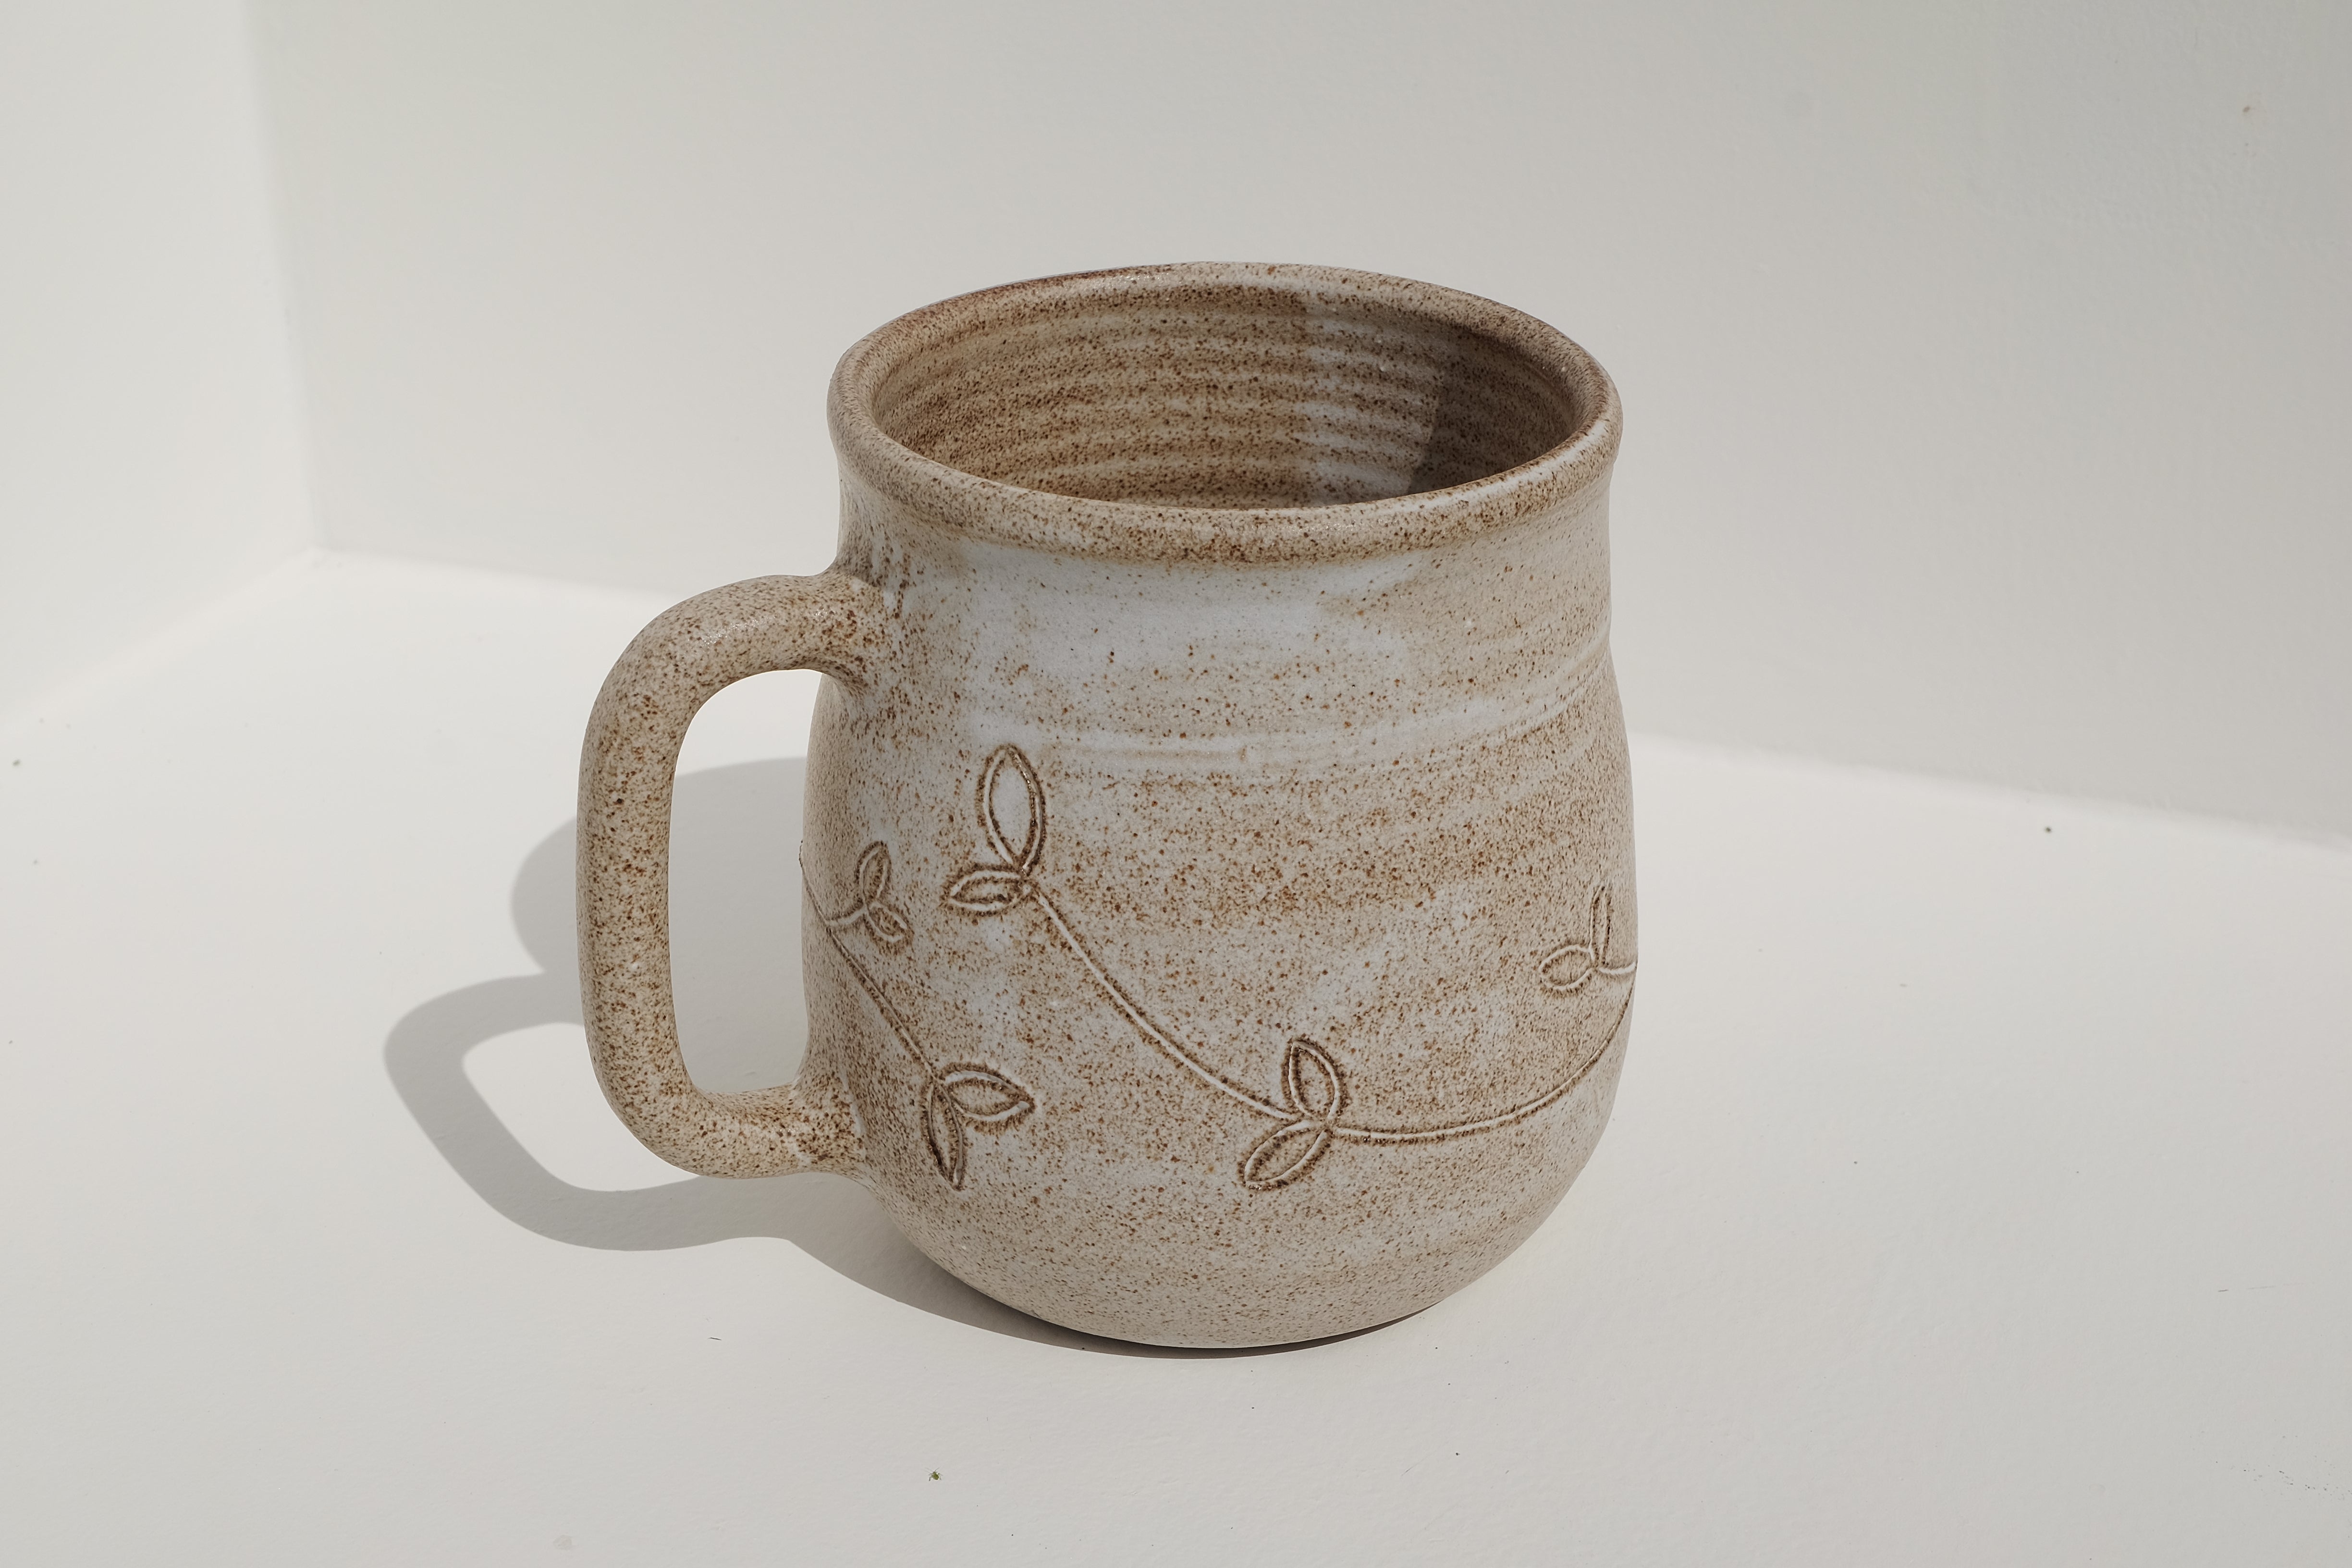 big tea / beer mug with floral details